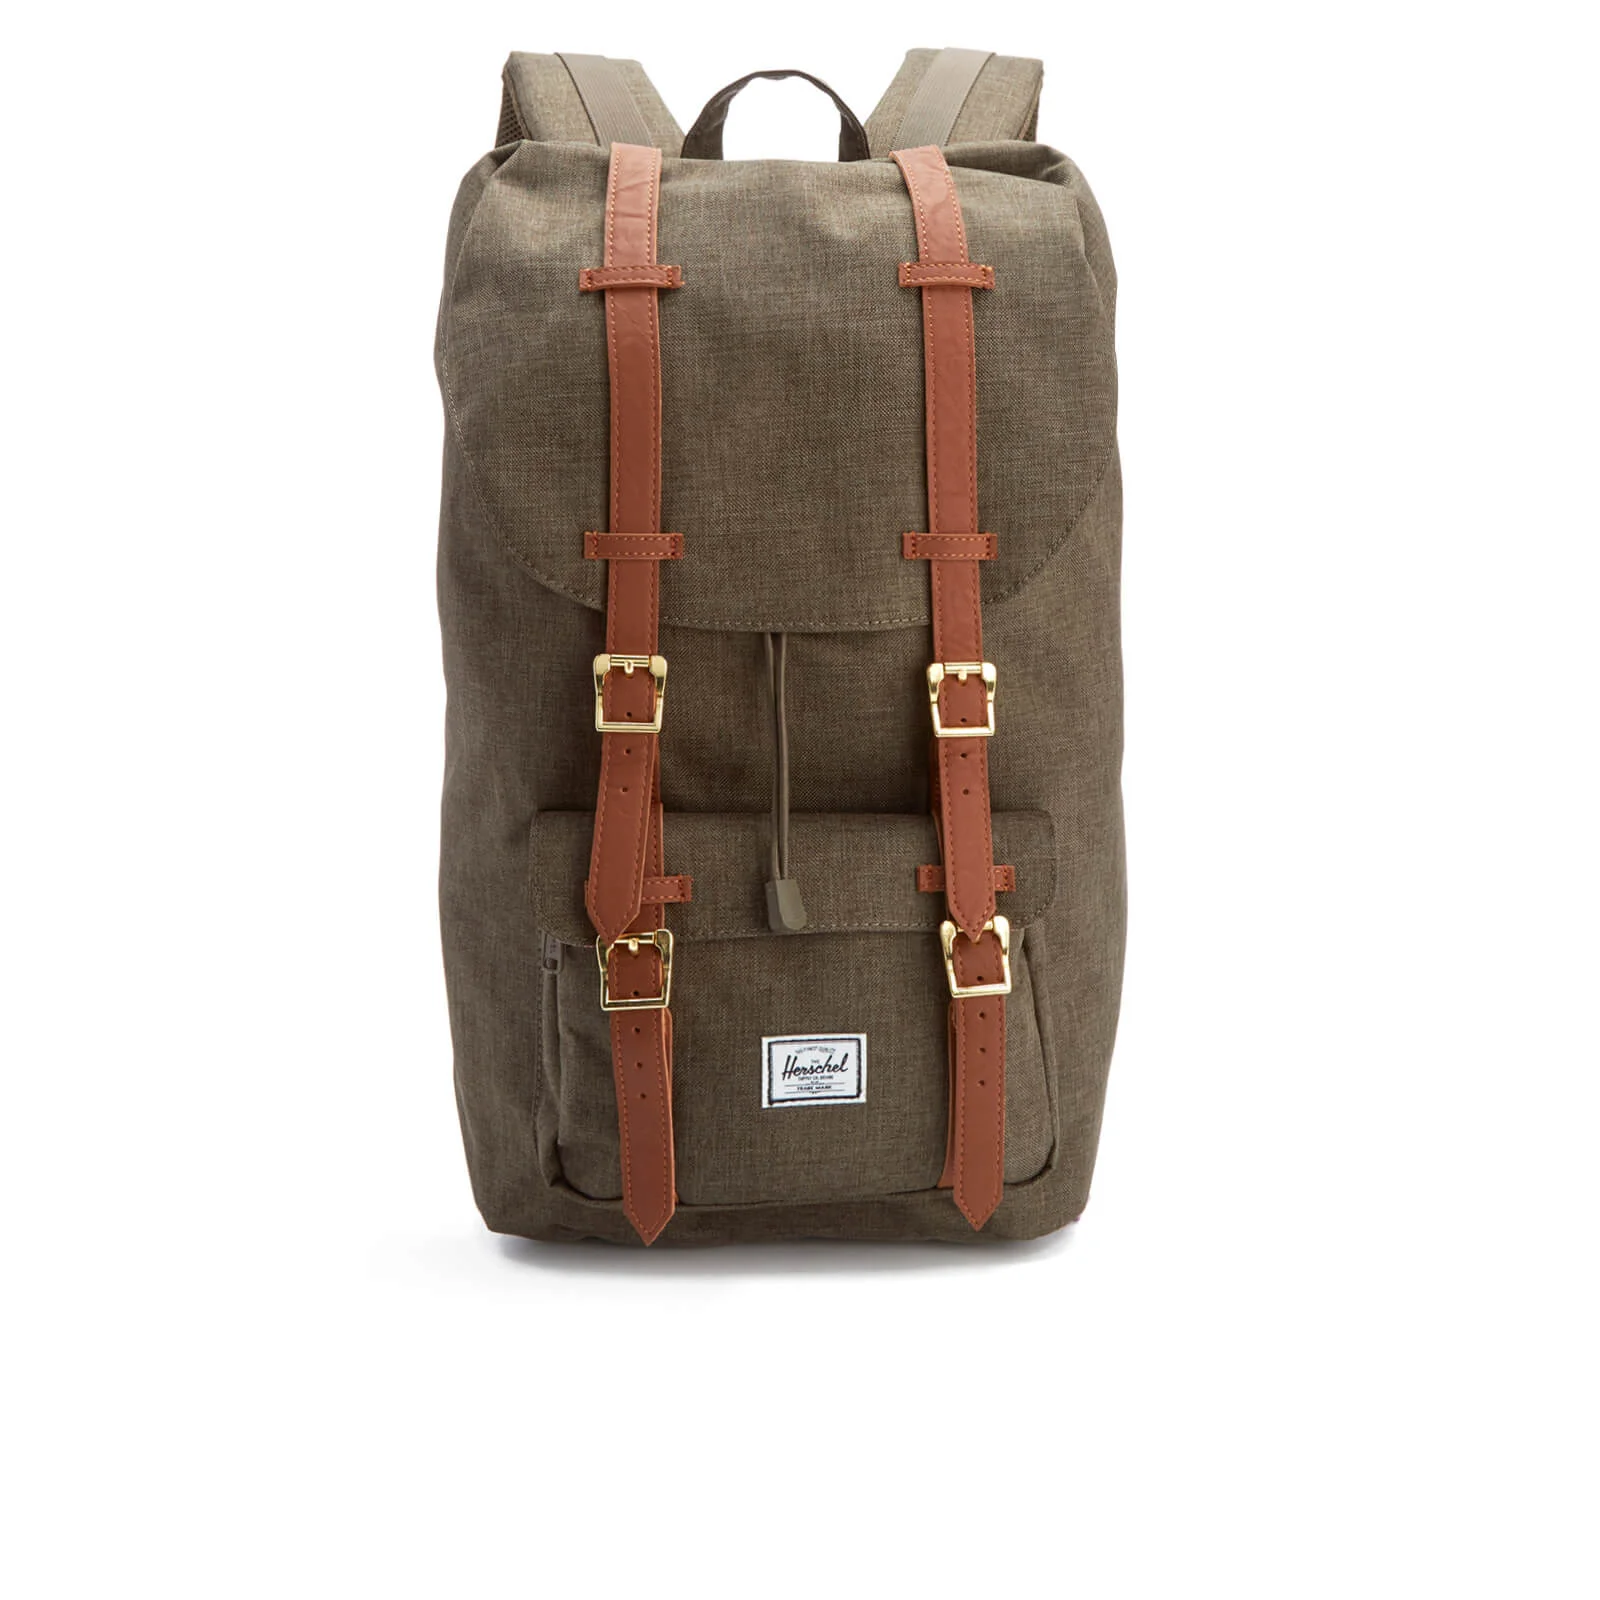 Herschel Supply Co. Men's Little America Backpack - Canteen Crosshatch/Tan Image 1